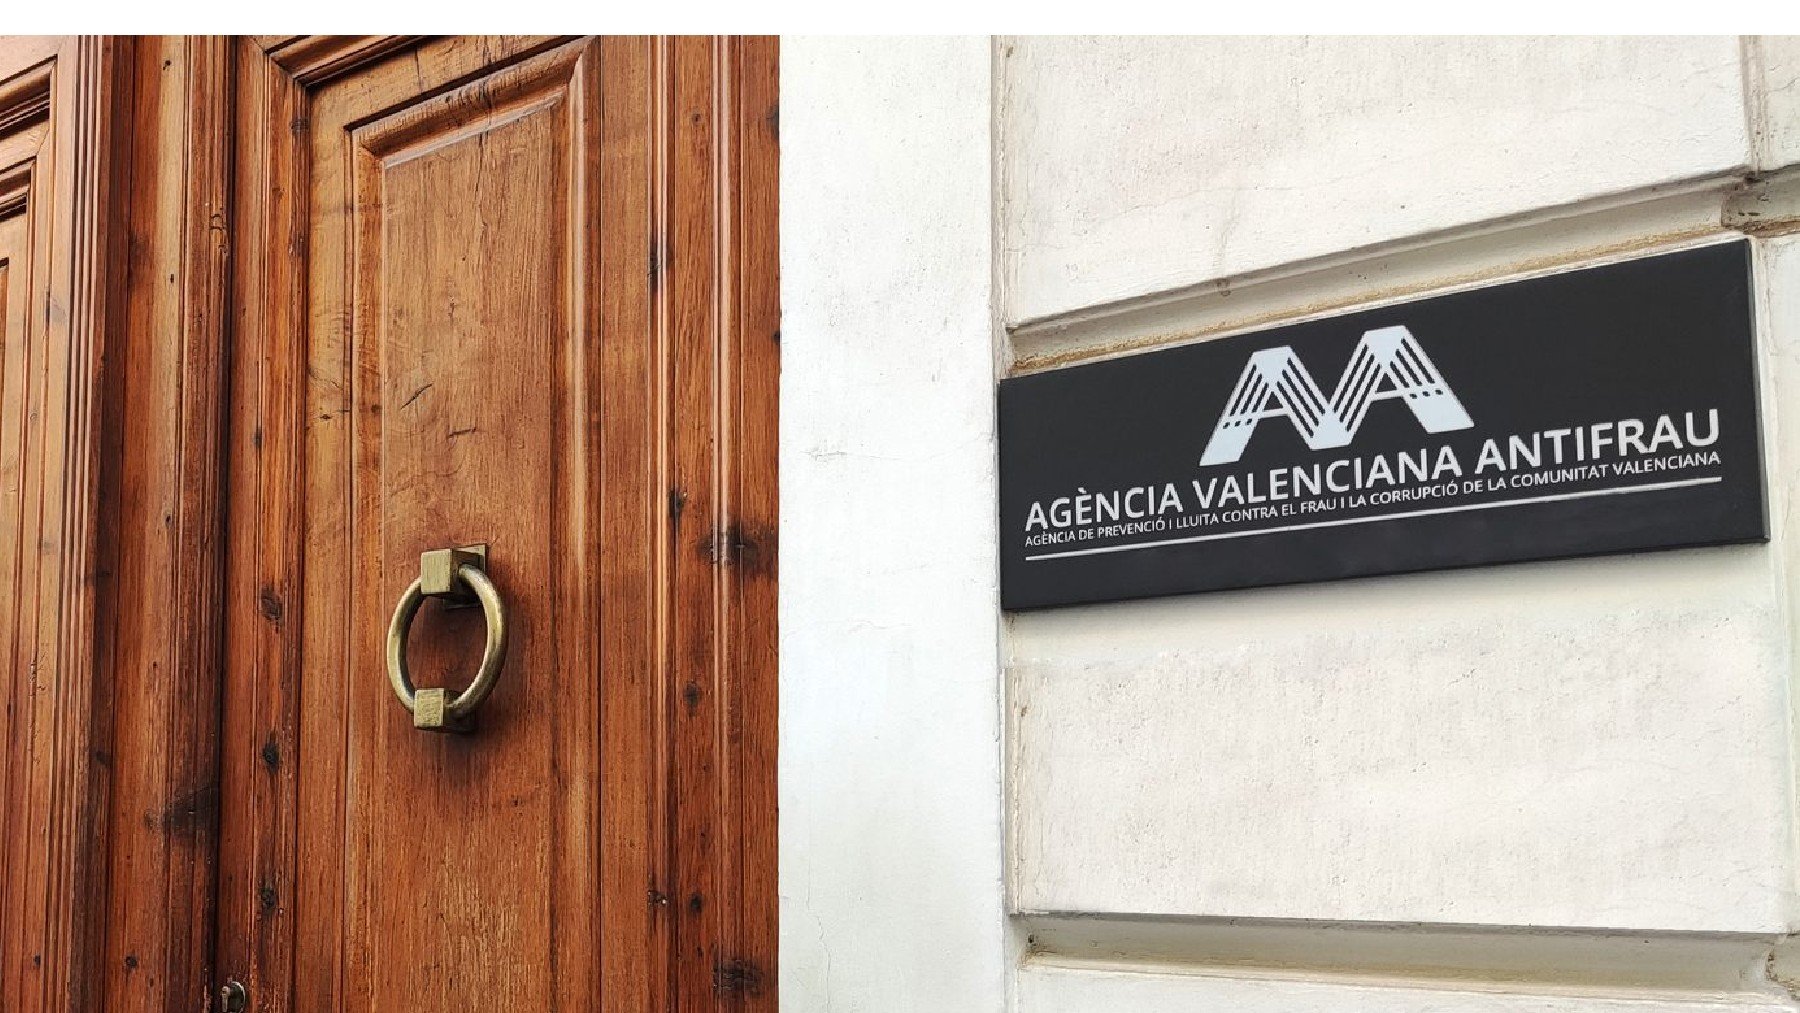 Fachada de la Agencia Valenciana Antifraude.